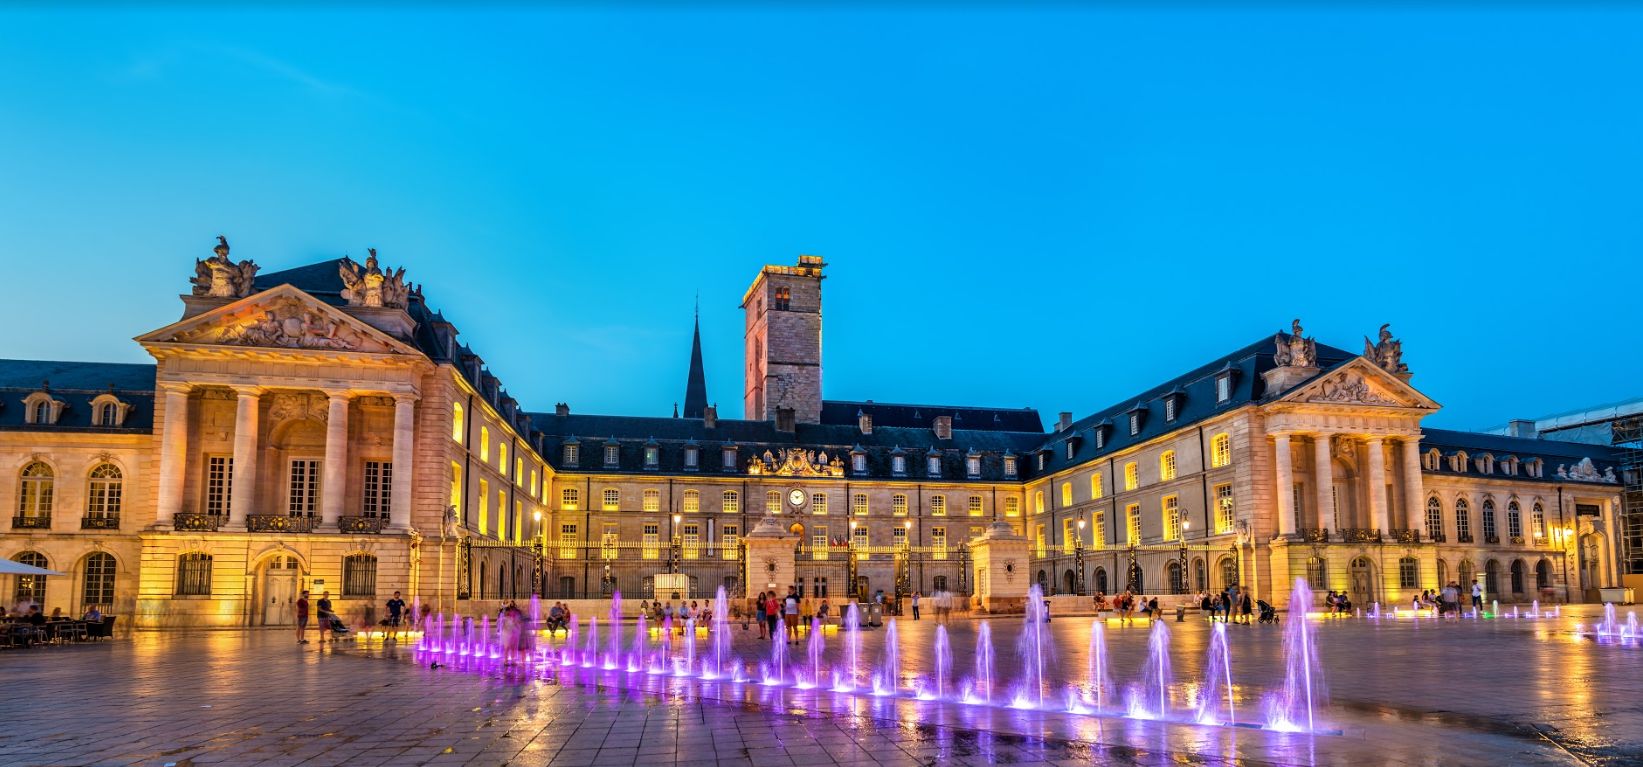 Palais des Ducs de Bourgogne, Dijon - France